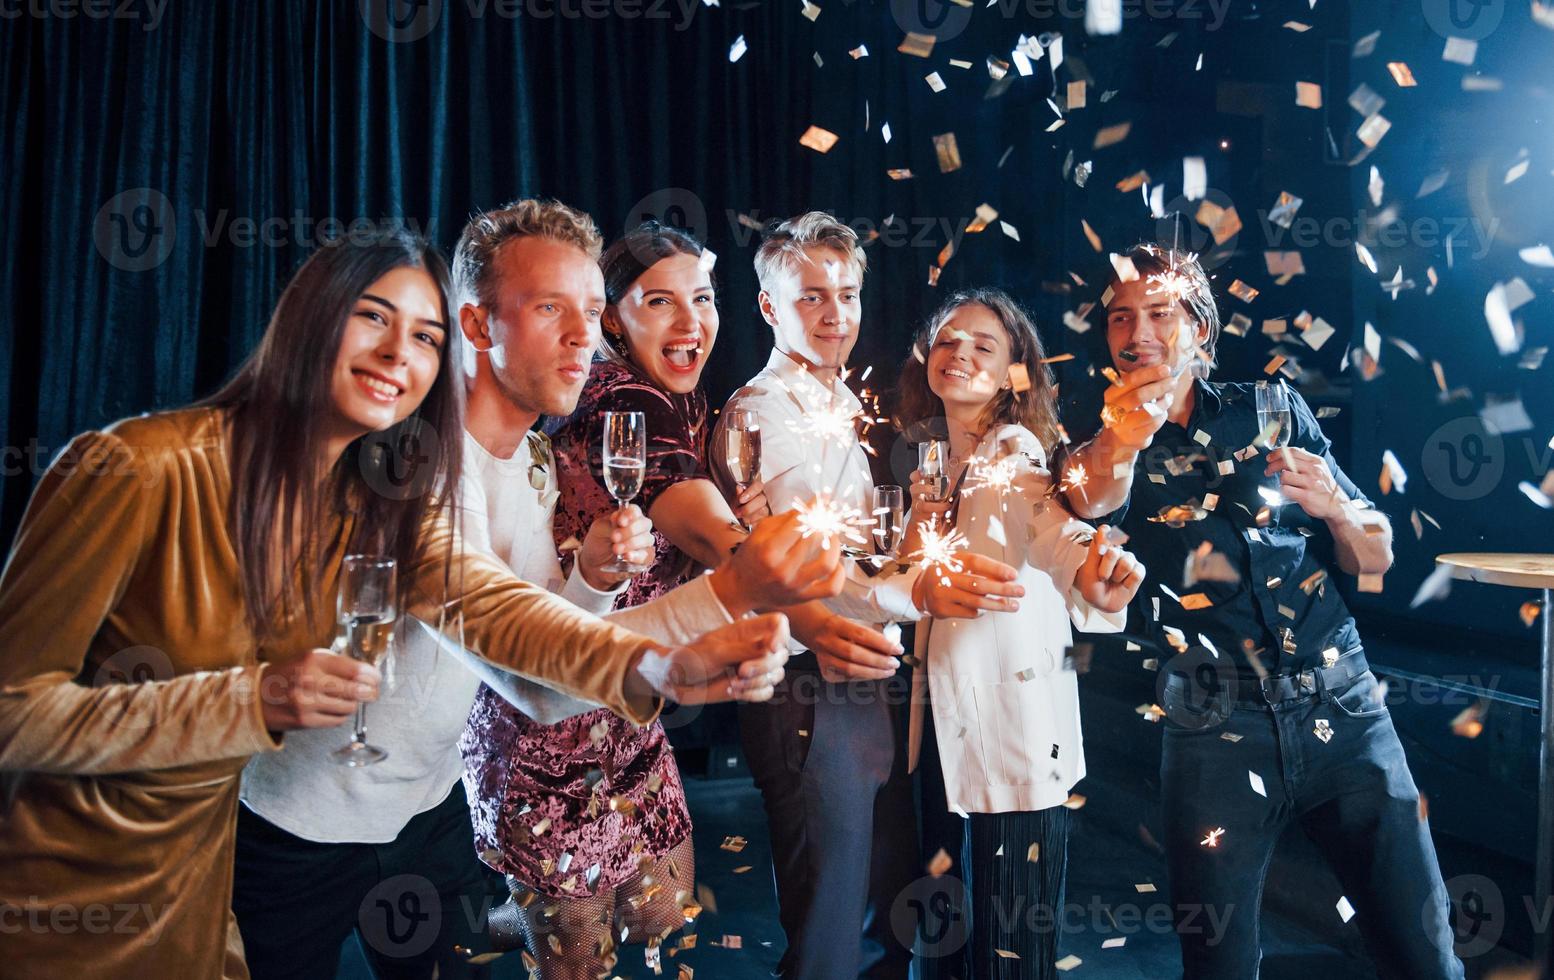 se divertindo com estrelinhas. confete está no ar. grupo de amigos alegres comemorando o ano novo dentro de casa com bebidas nas mãos foto